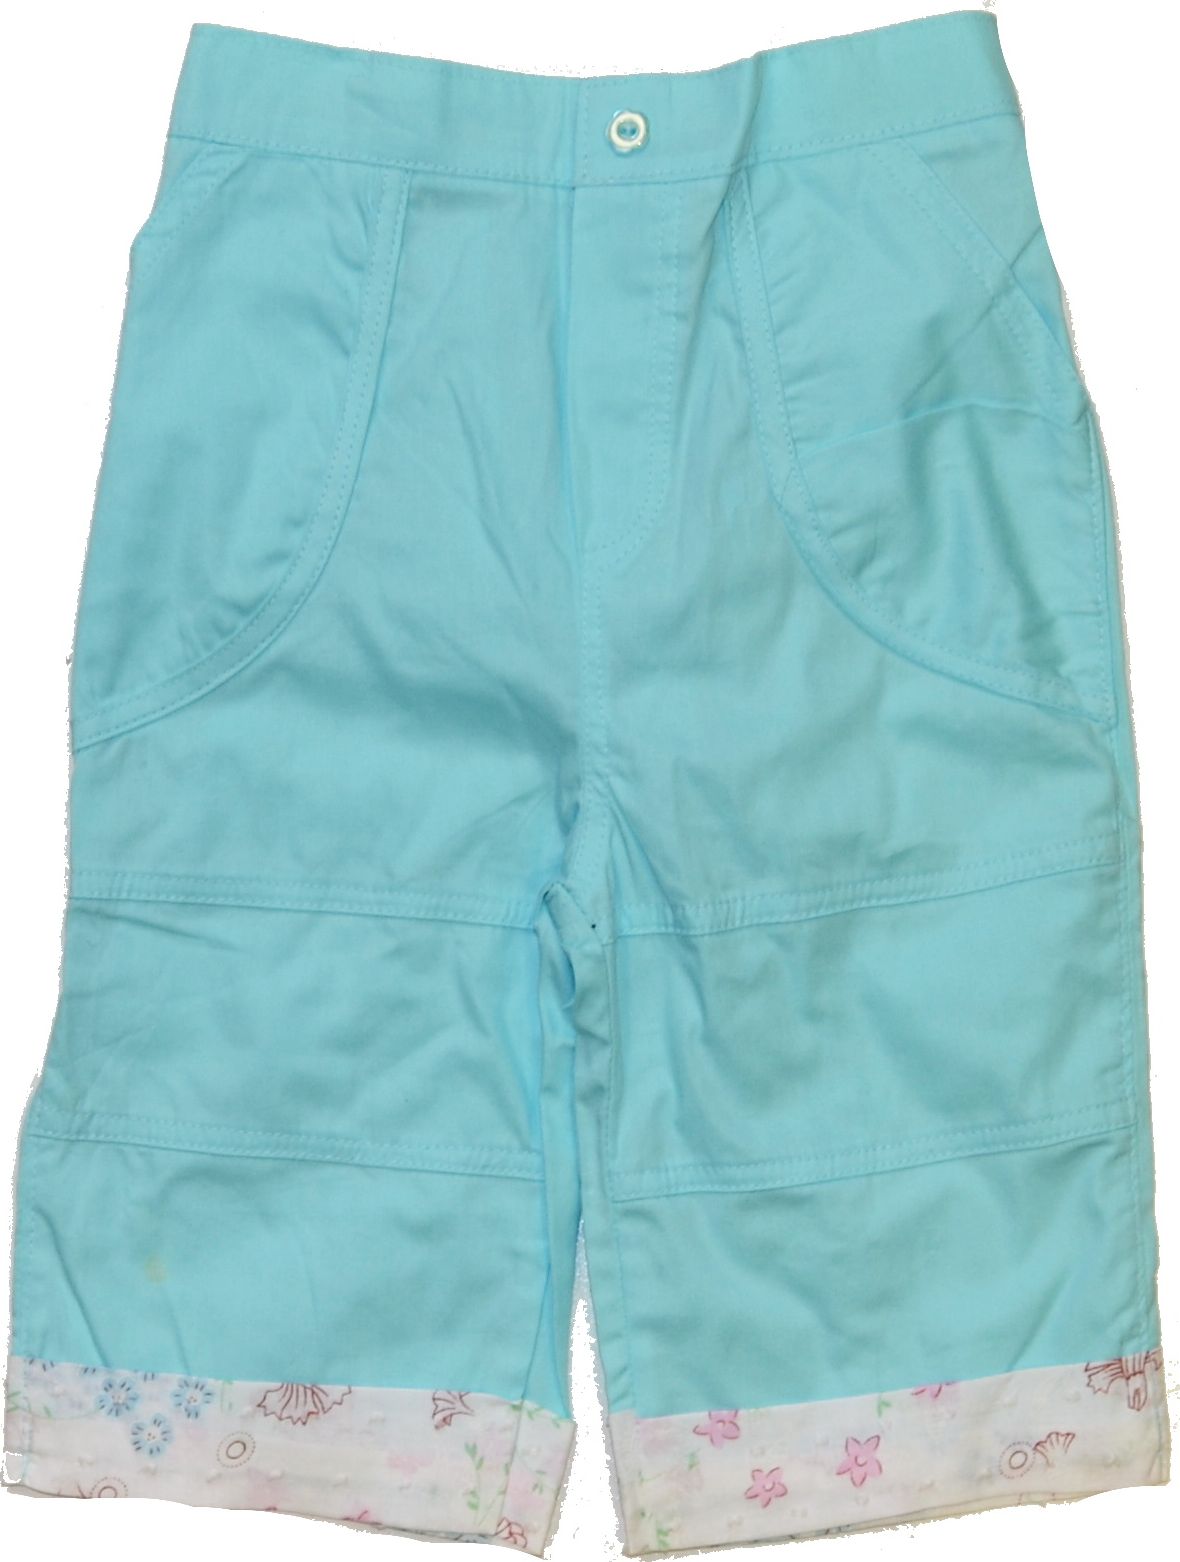 Dívčí letní kalhoty, Zelinkavé, vel.24 měsíců Výprodej - obrázek 1